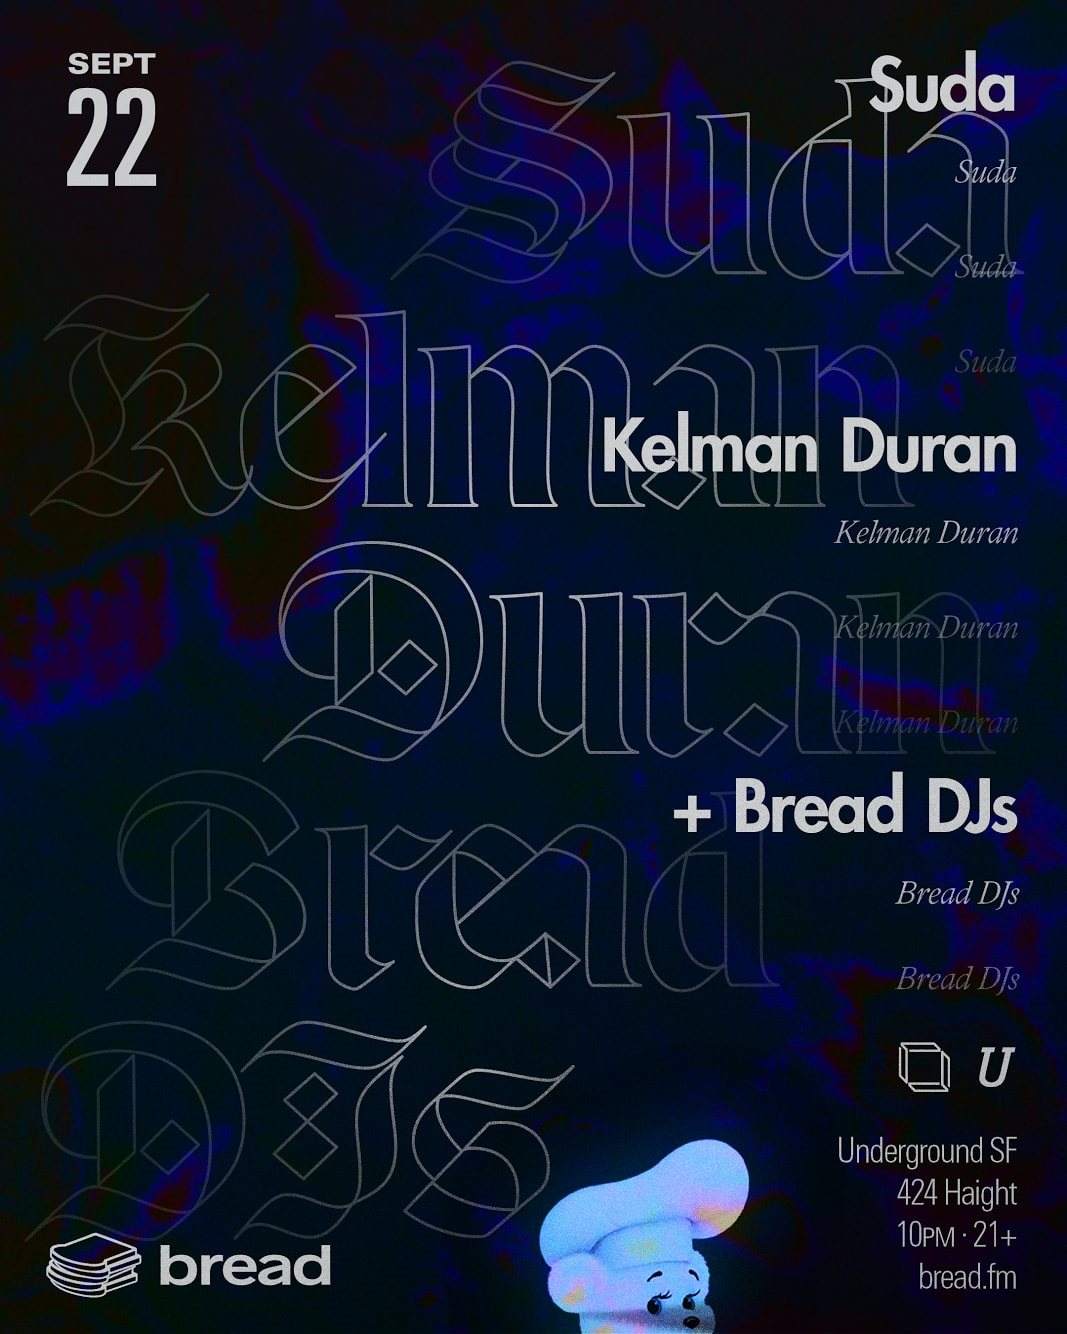 Bread with Suda & Kelman Duran - フライヤー表